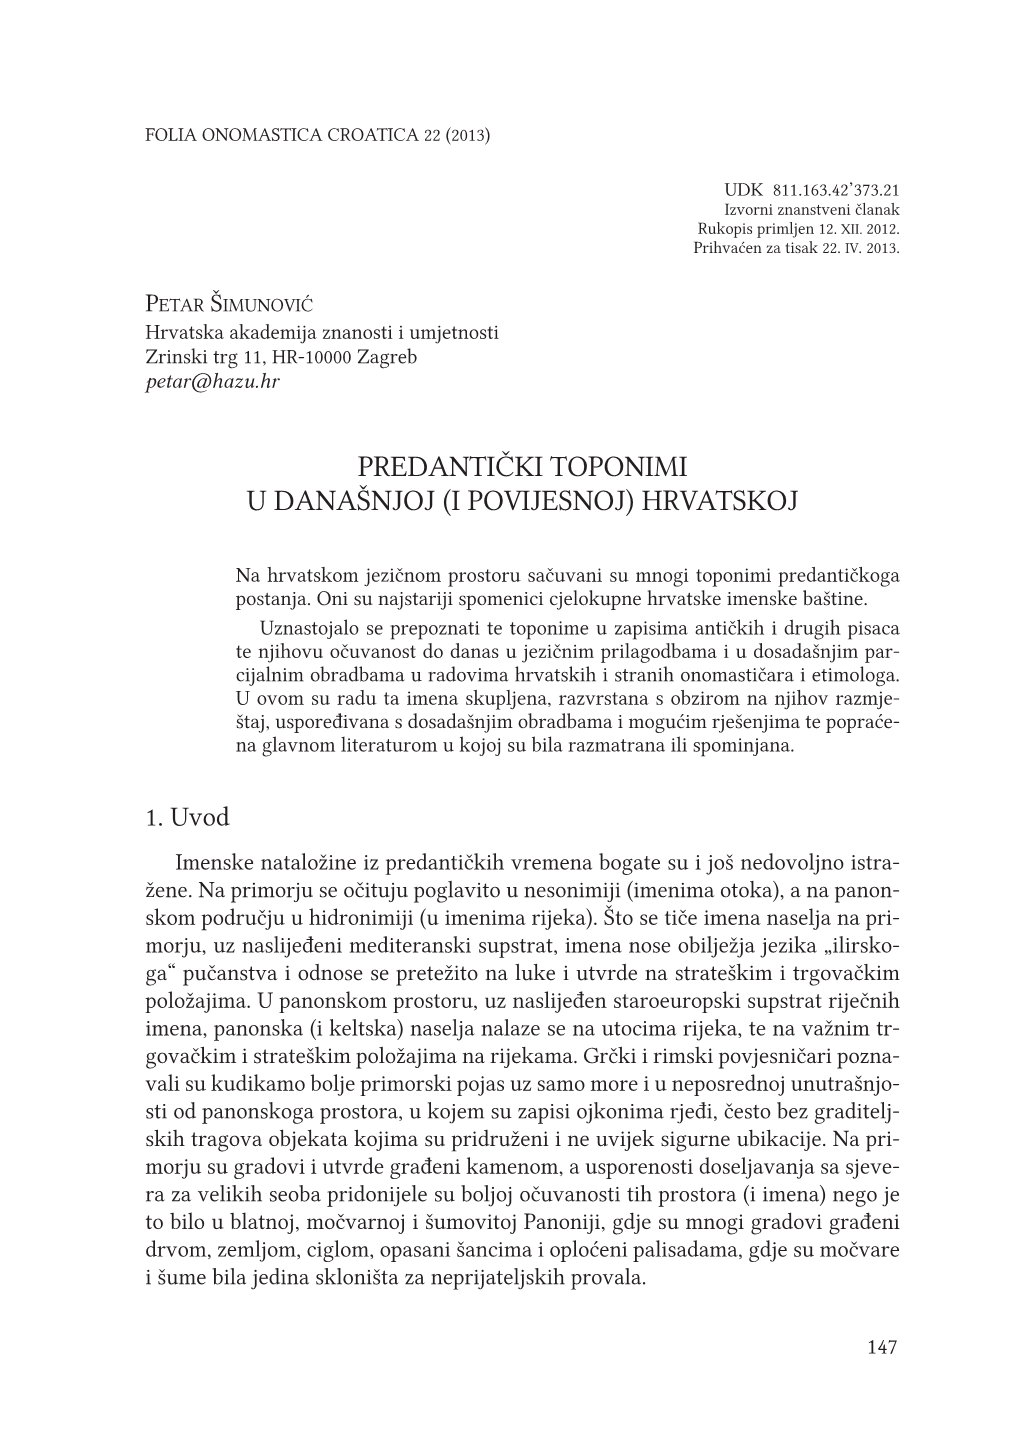 Petar Šimunović: Predantički Toponimi U Današnjoj (I Povijesnoj) Hrvatskoj FOC 22 (2013), 147–214